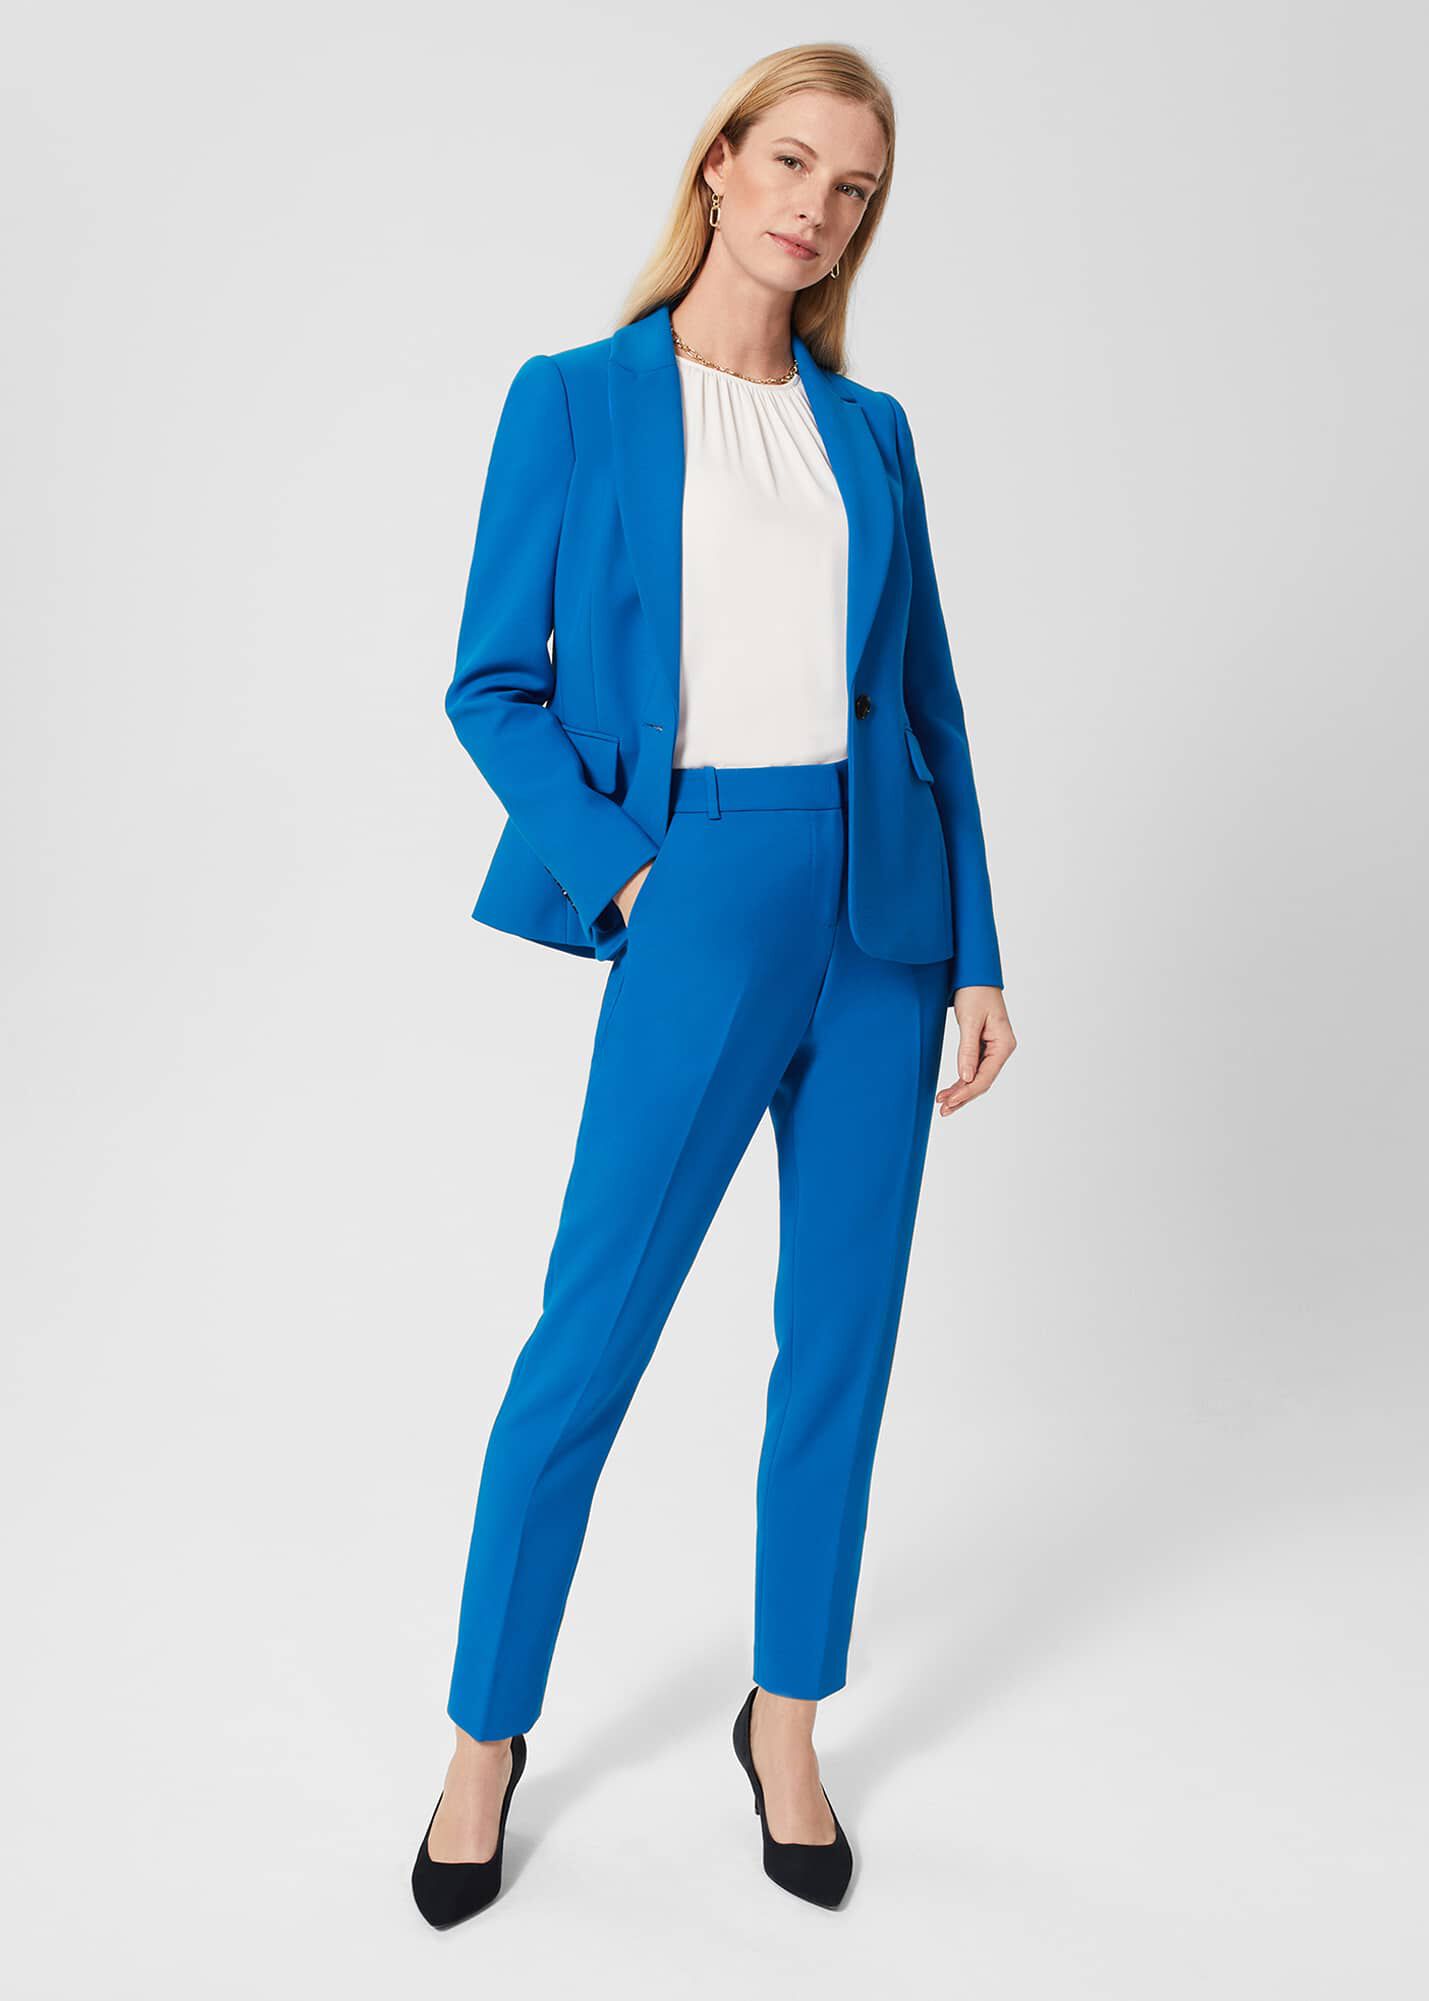 electric blue trouser suits ladies